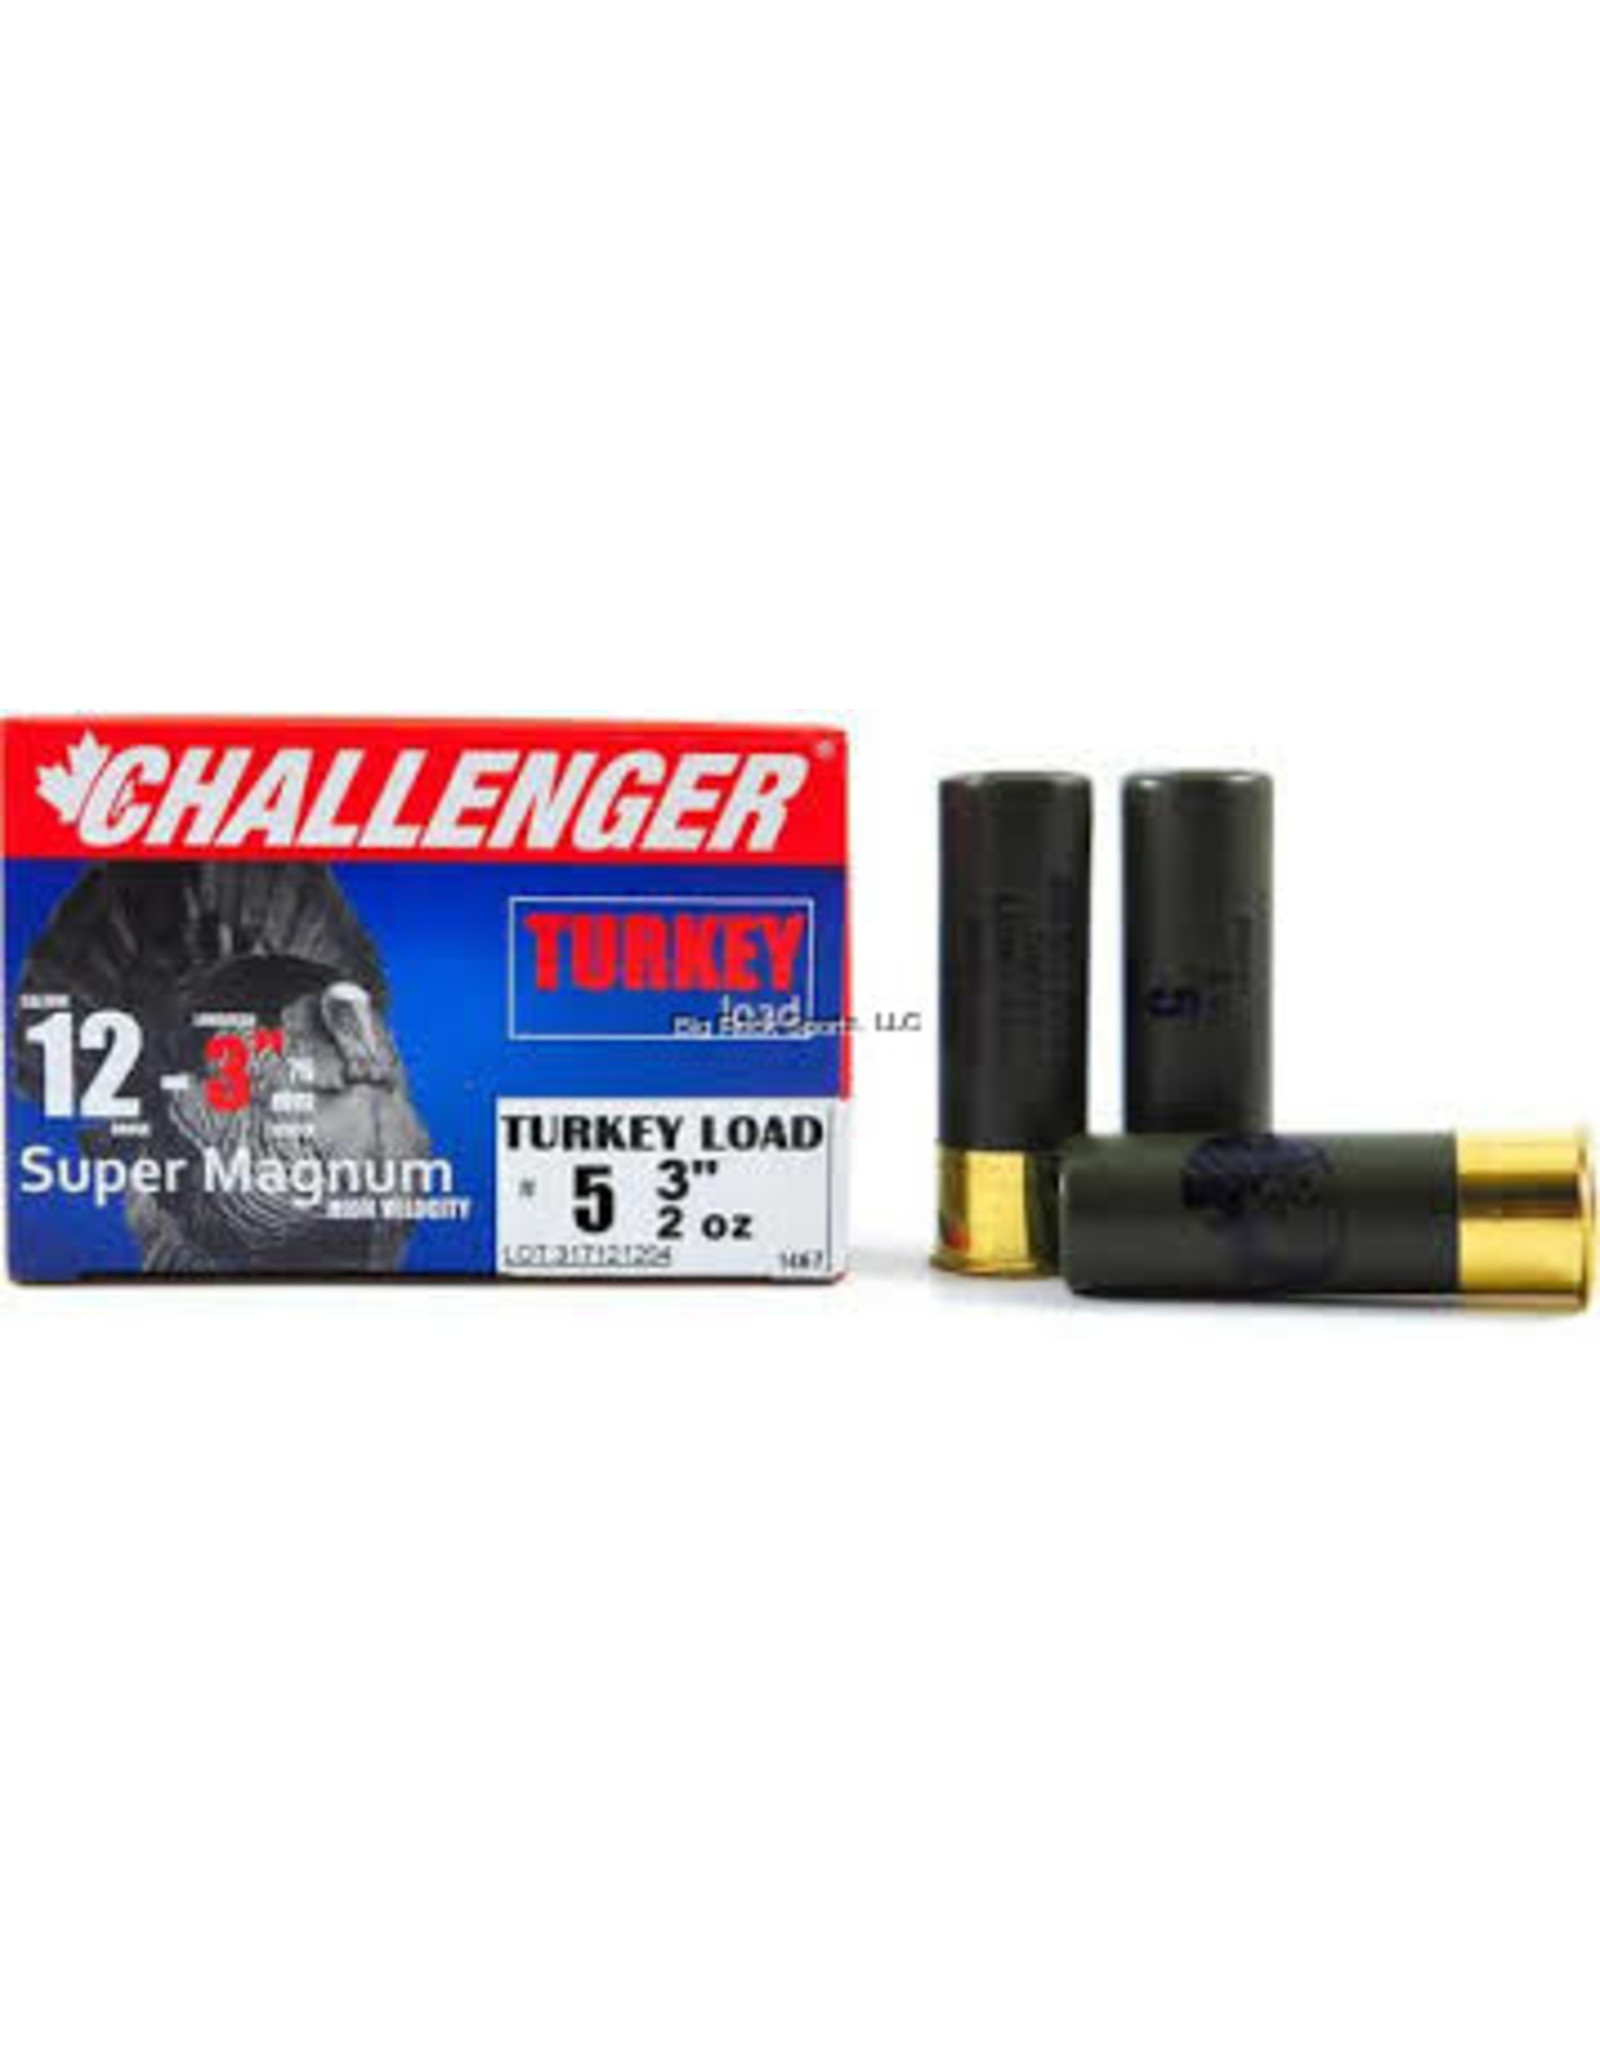 Challenger Challenger Ammo 30044 Turkey Shotshell 12 GA, 3", 2 oz, #4, 10 Rnd